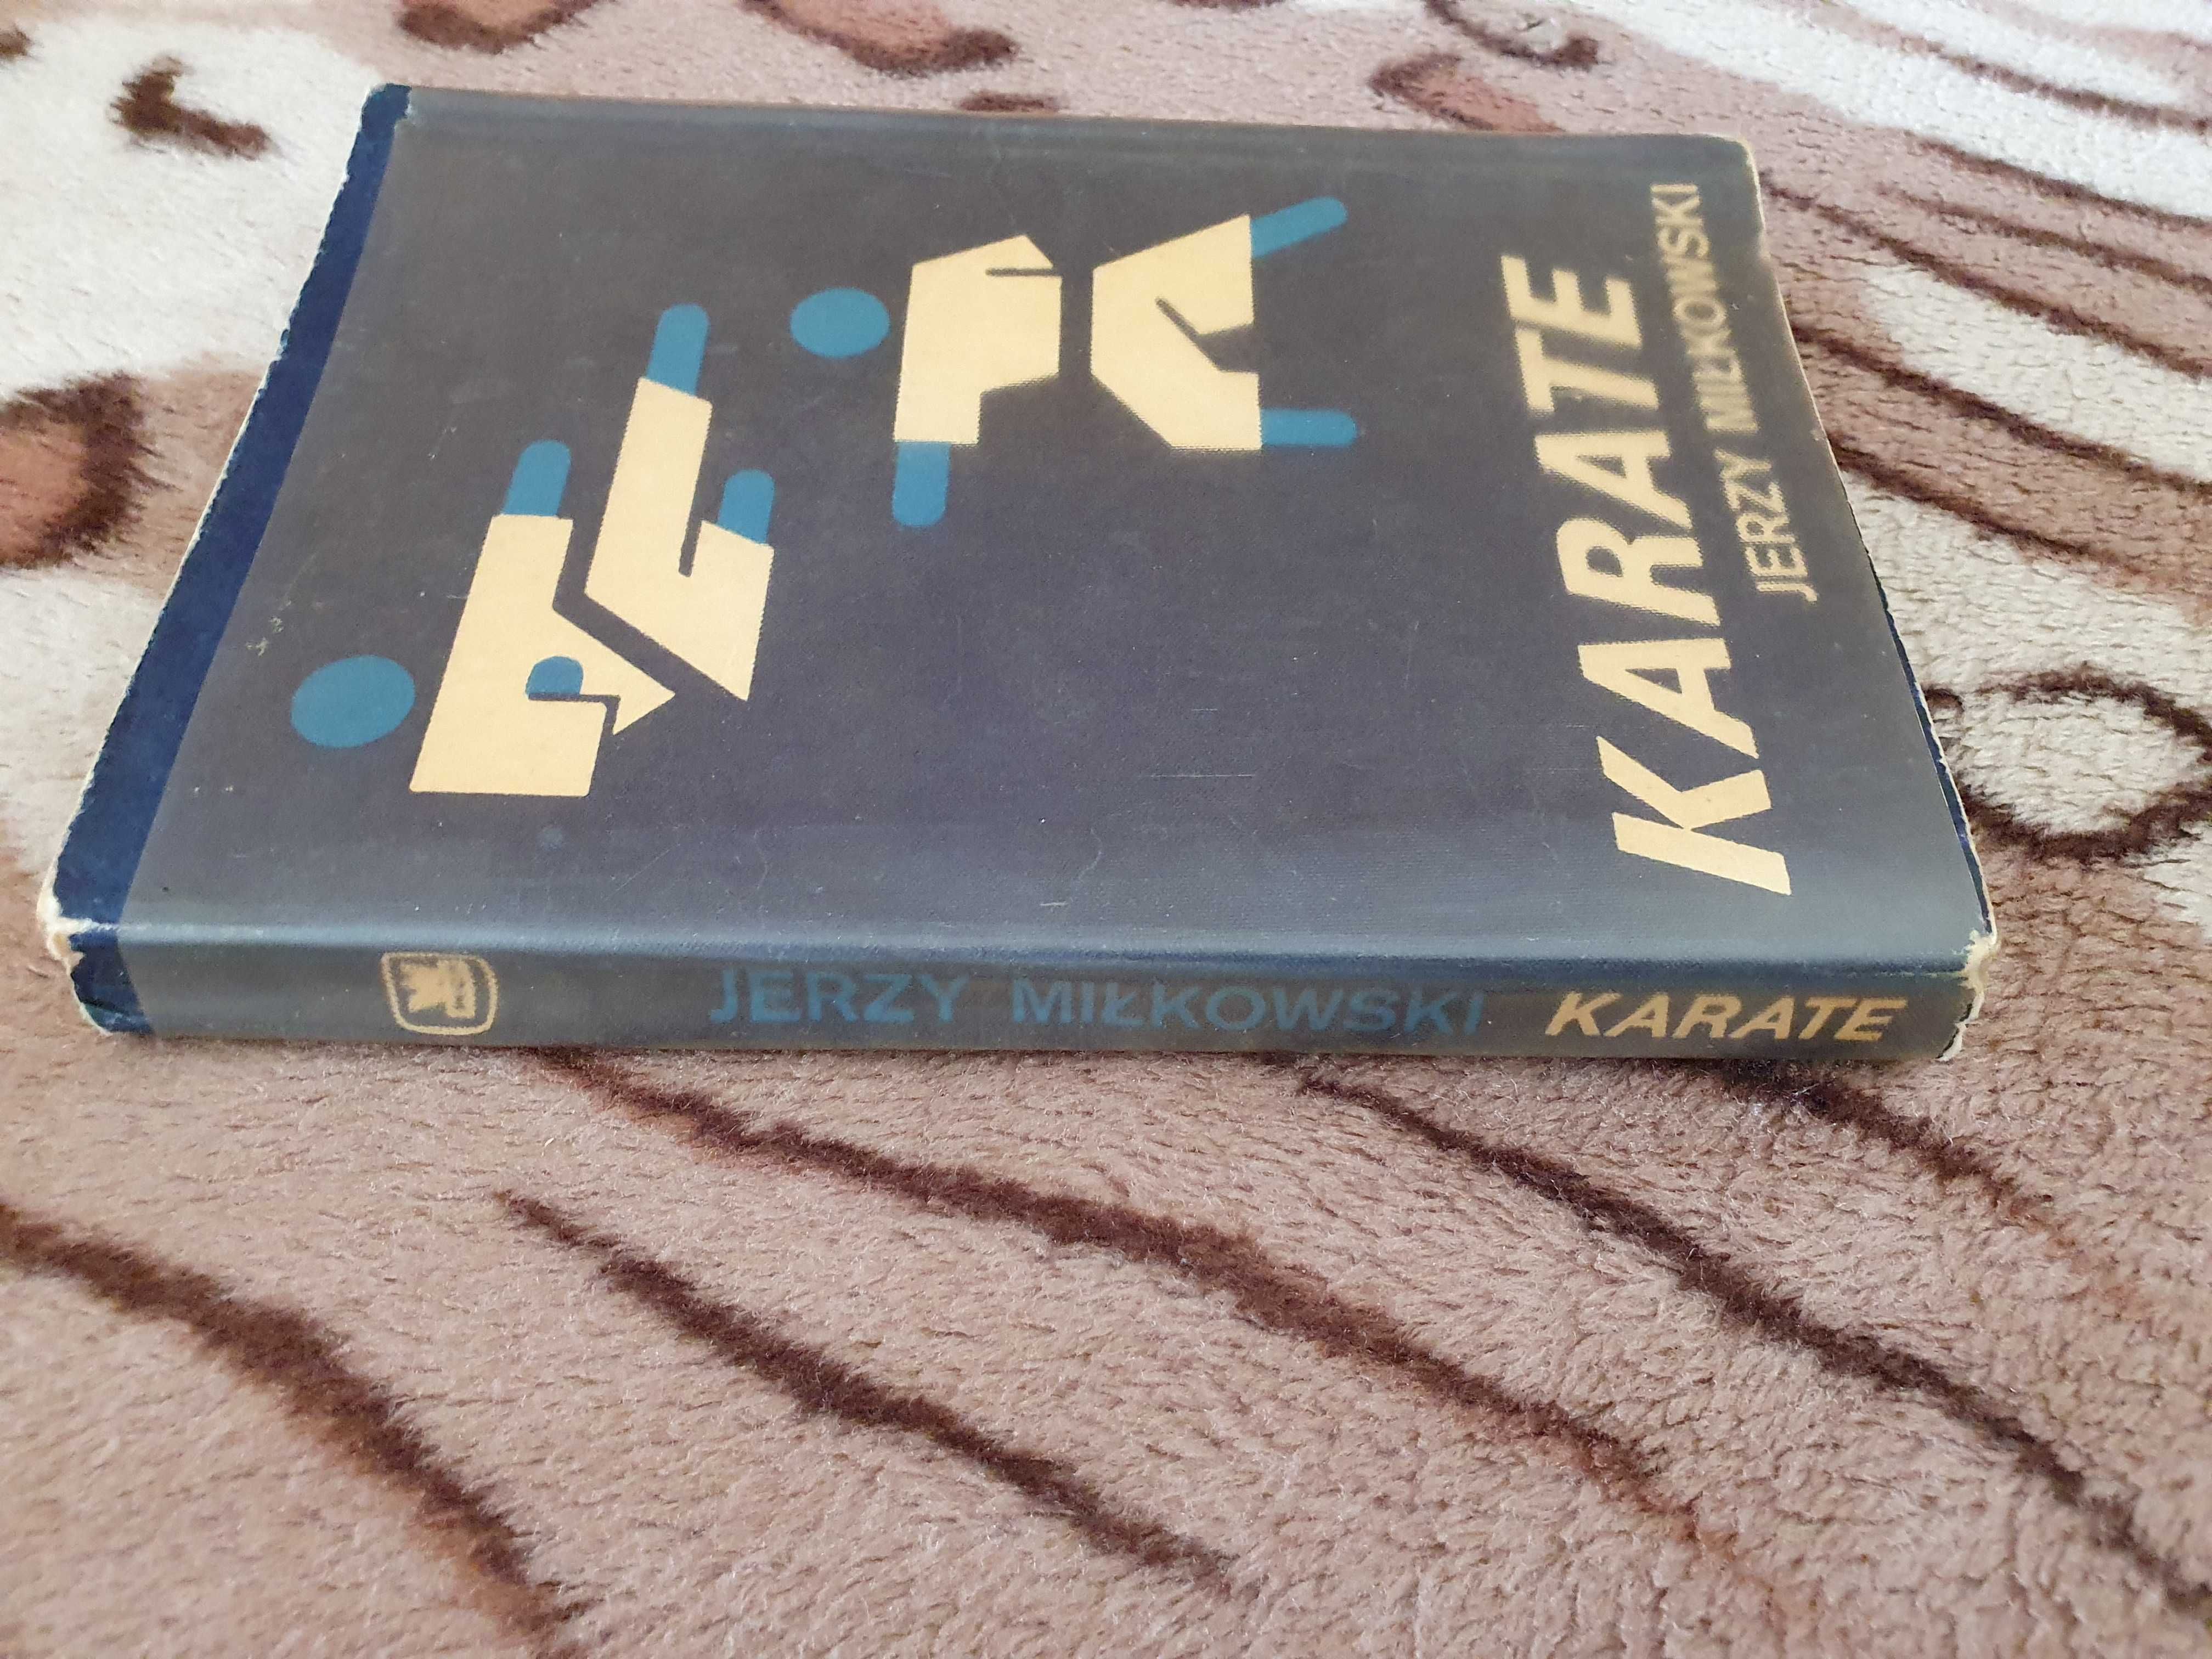 Książka Jerzego Miłkowskiego "Karate"